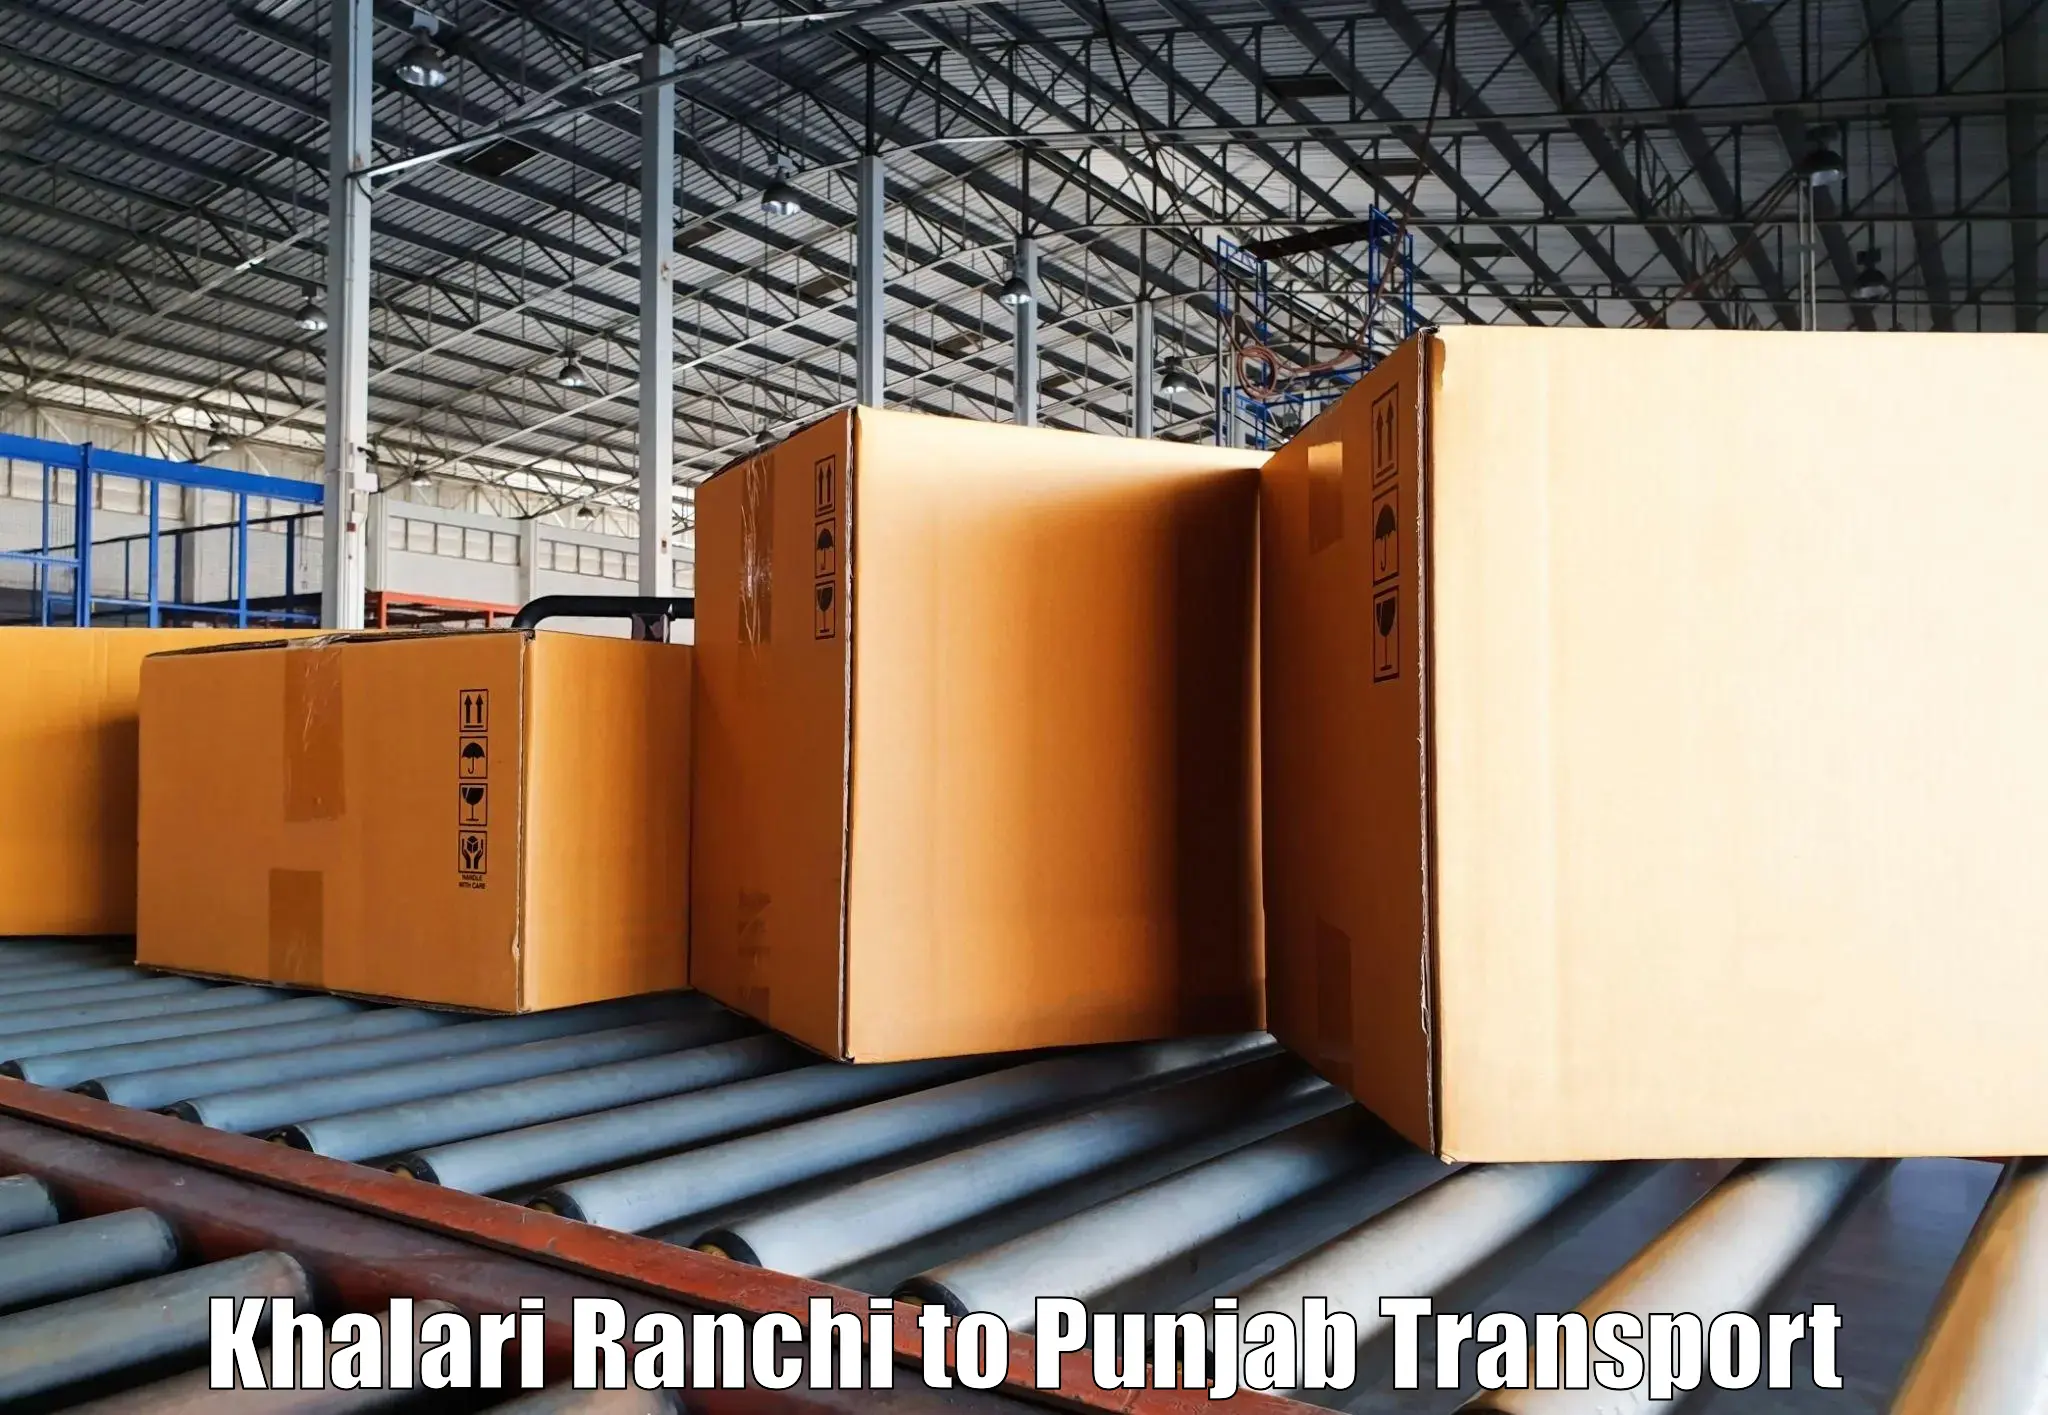 Parcel transport services Khalari Ranchi to Hoshiarpur